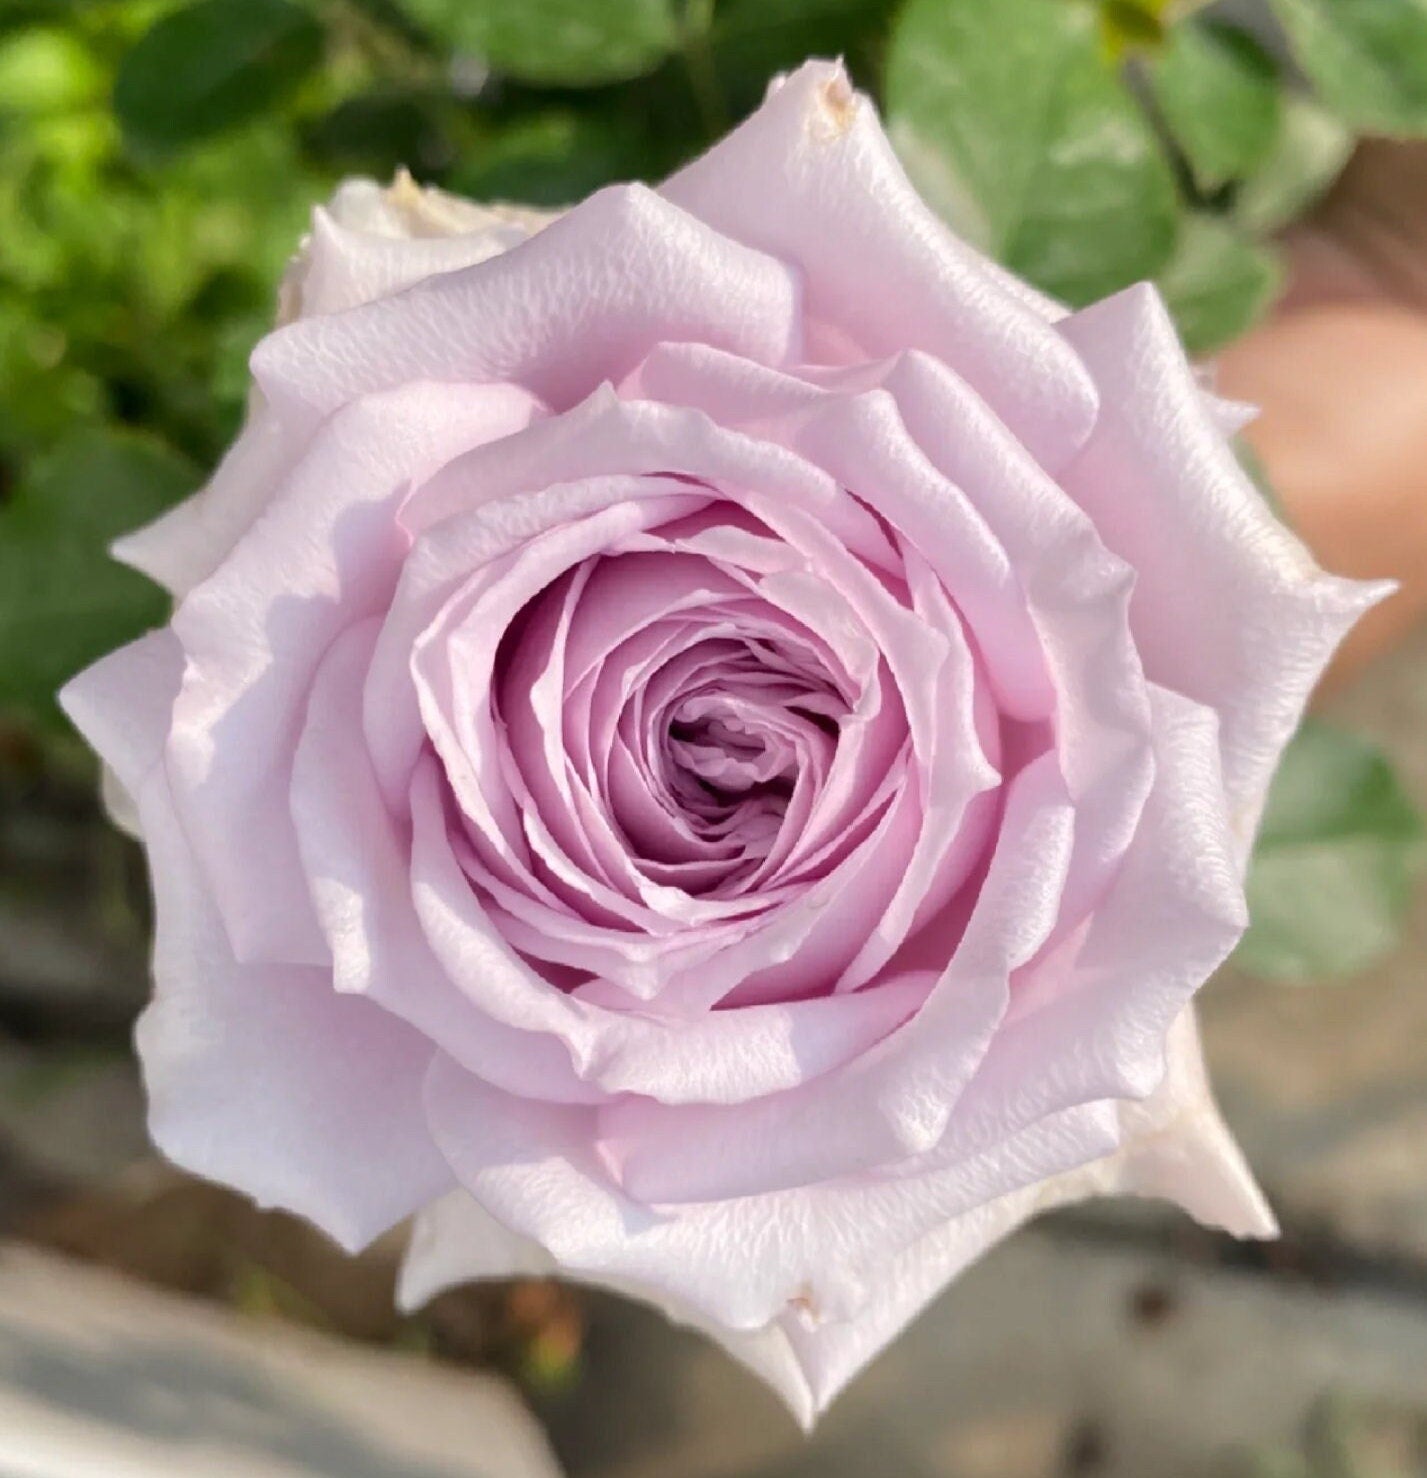 Rose 'Stirling Sensation' (真实感觉) (1 Gal+ Live Plant) Shrub Rose